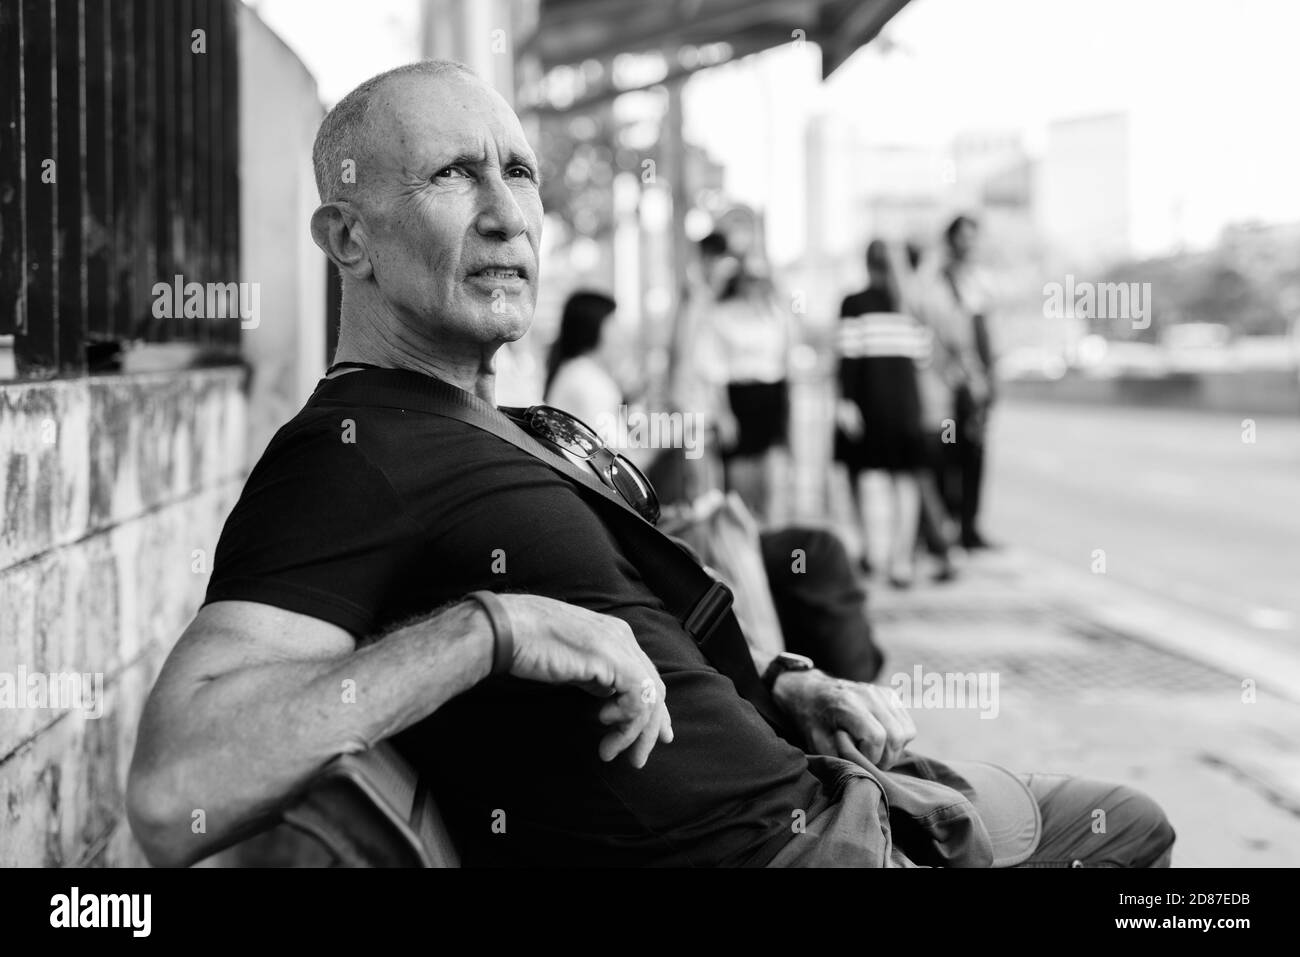 Turismo Senior calva hombre esperando y sentados en banco de madera en la parada del autobús, en Bangkok, Tailandia Foto de stock